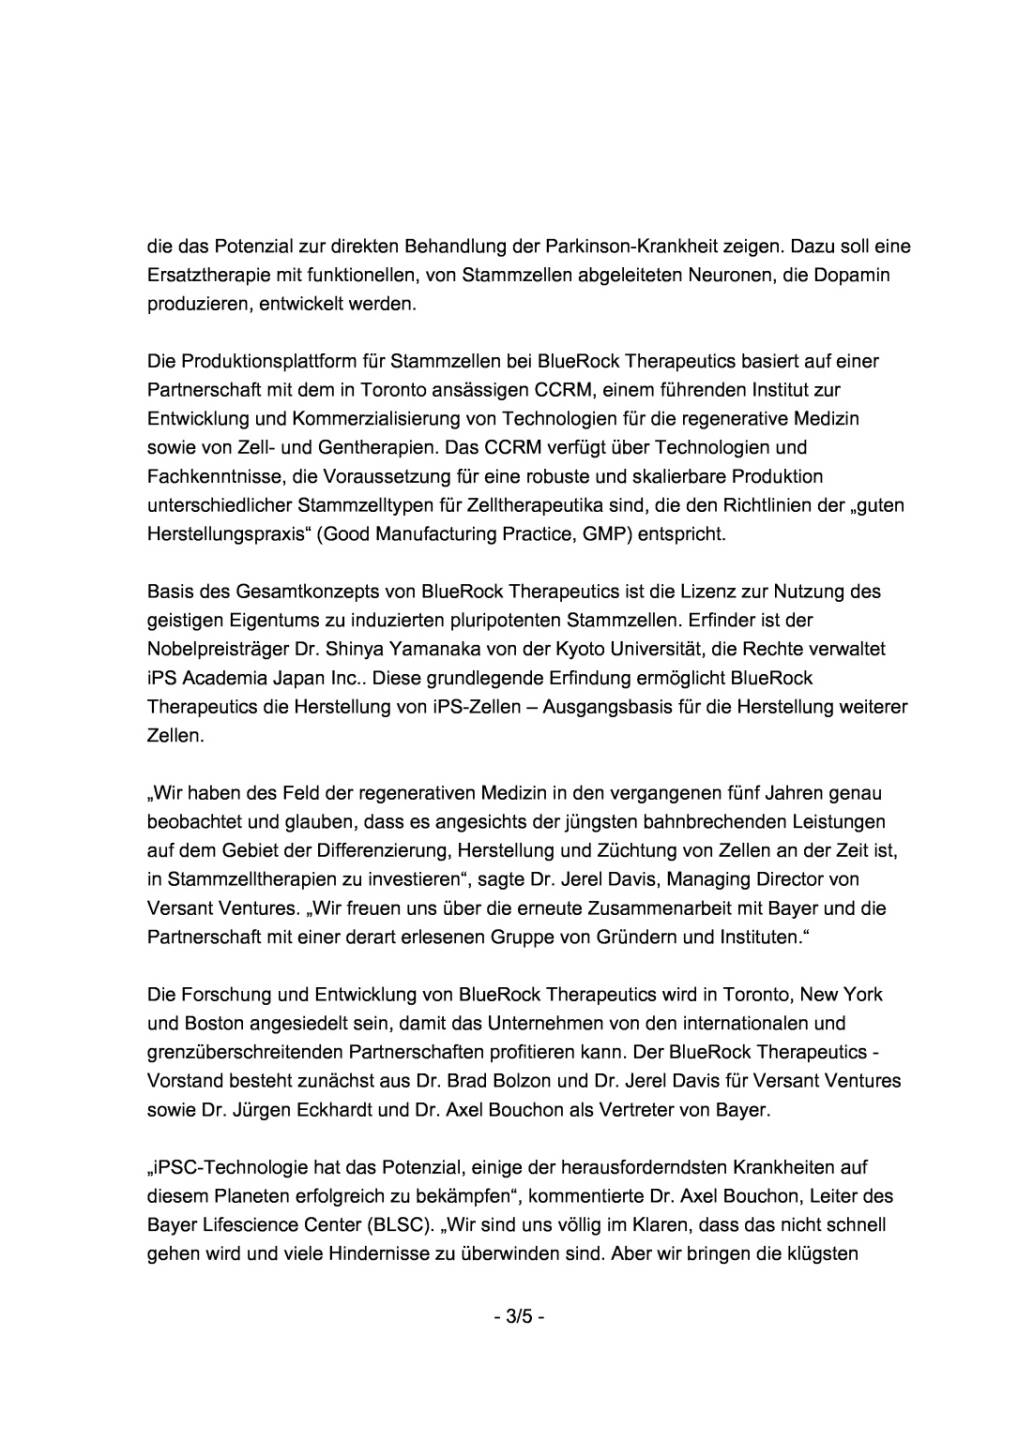 Bayer und Versant Ventures gründen Unternehmen, Seite 3/5, komplettes Dokument unter http://boerse-social.com/static/uploads/file_2013_bayer_und_versant_ventures_grunden_unternehmen.pdf